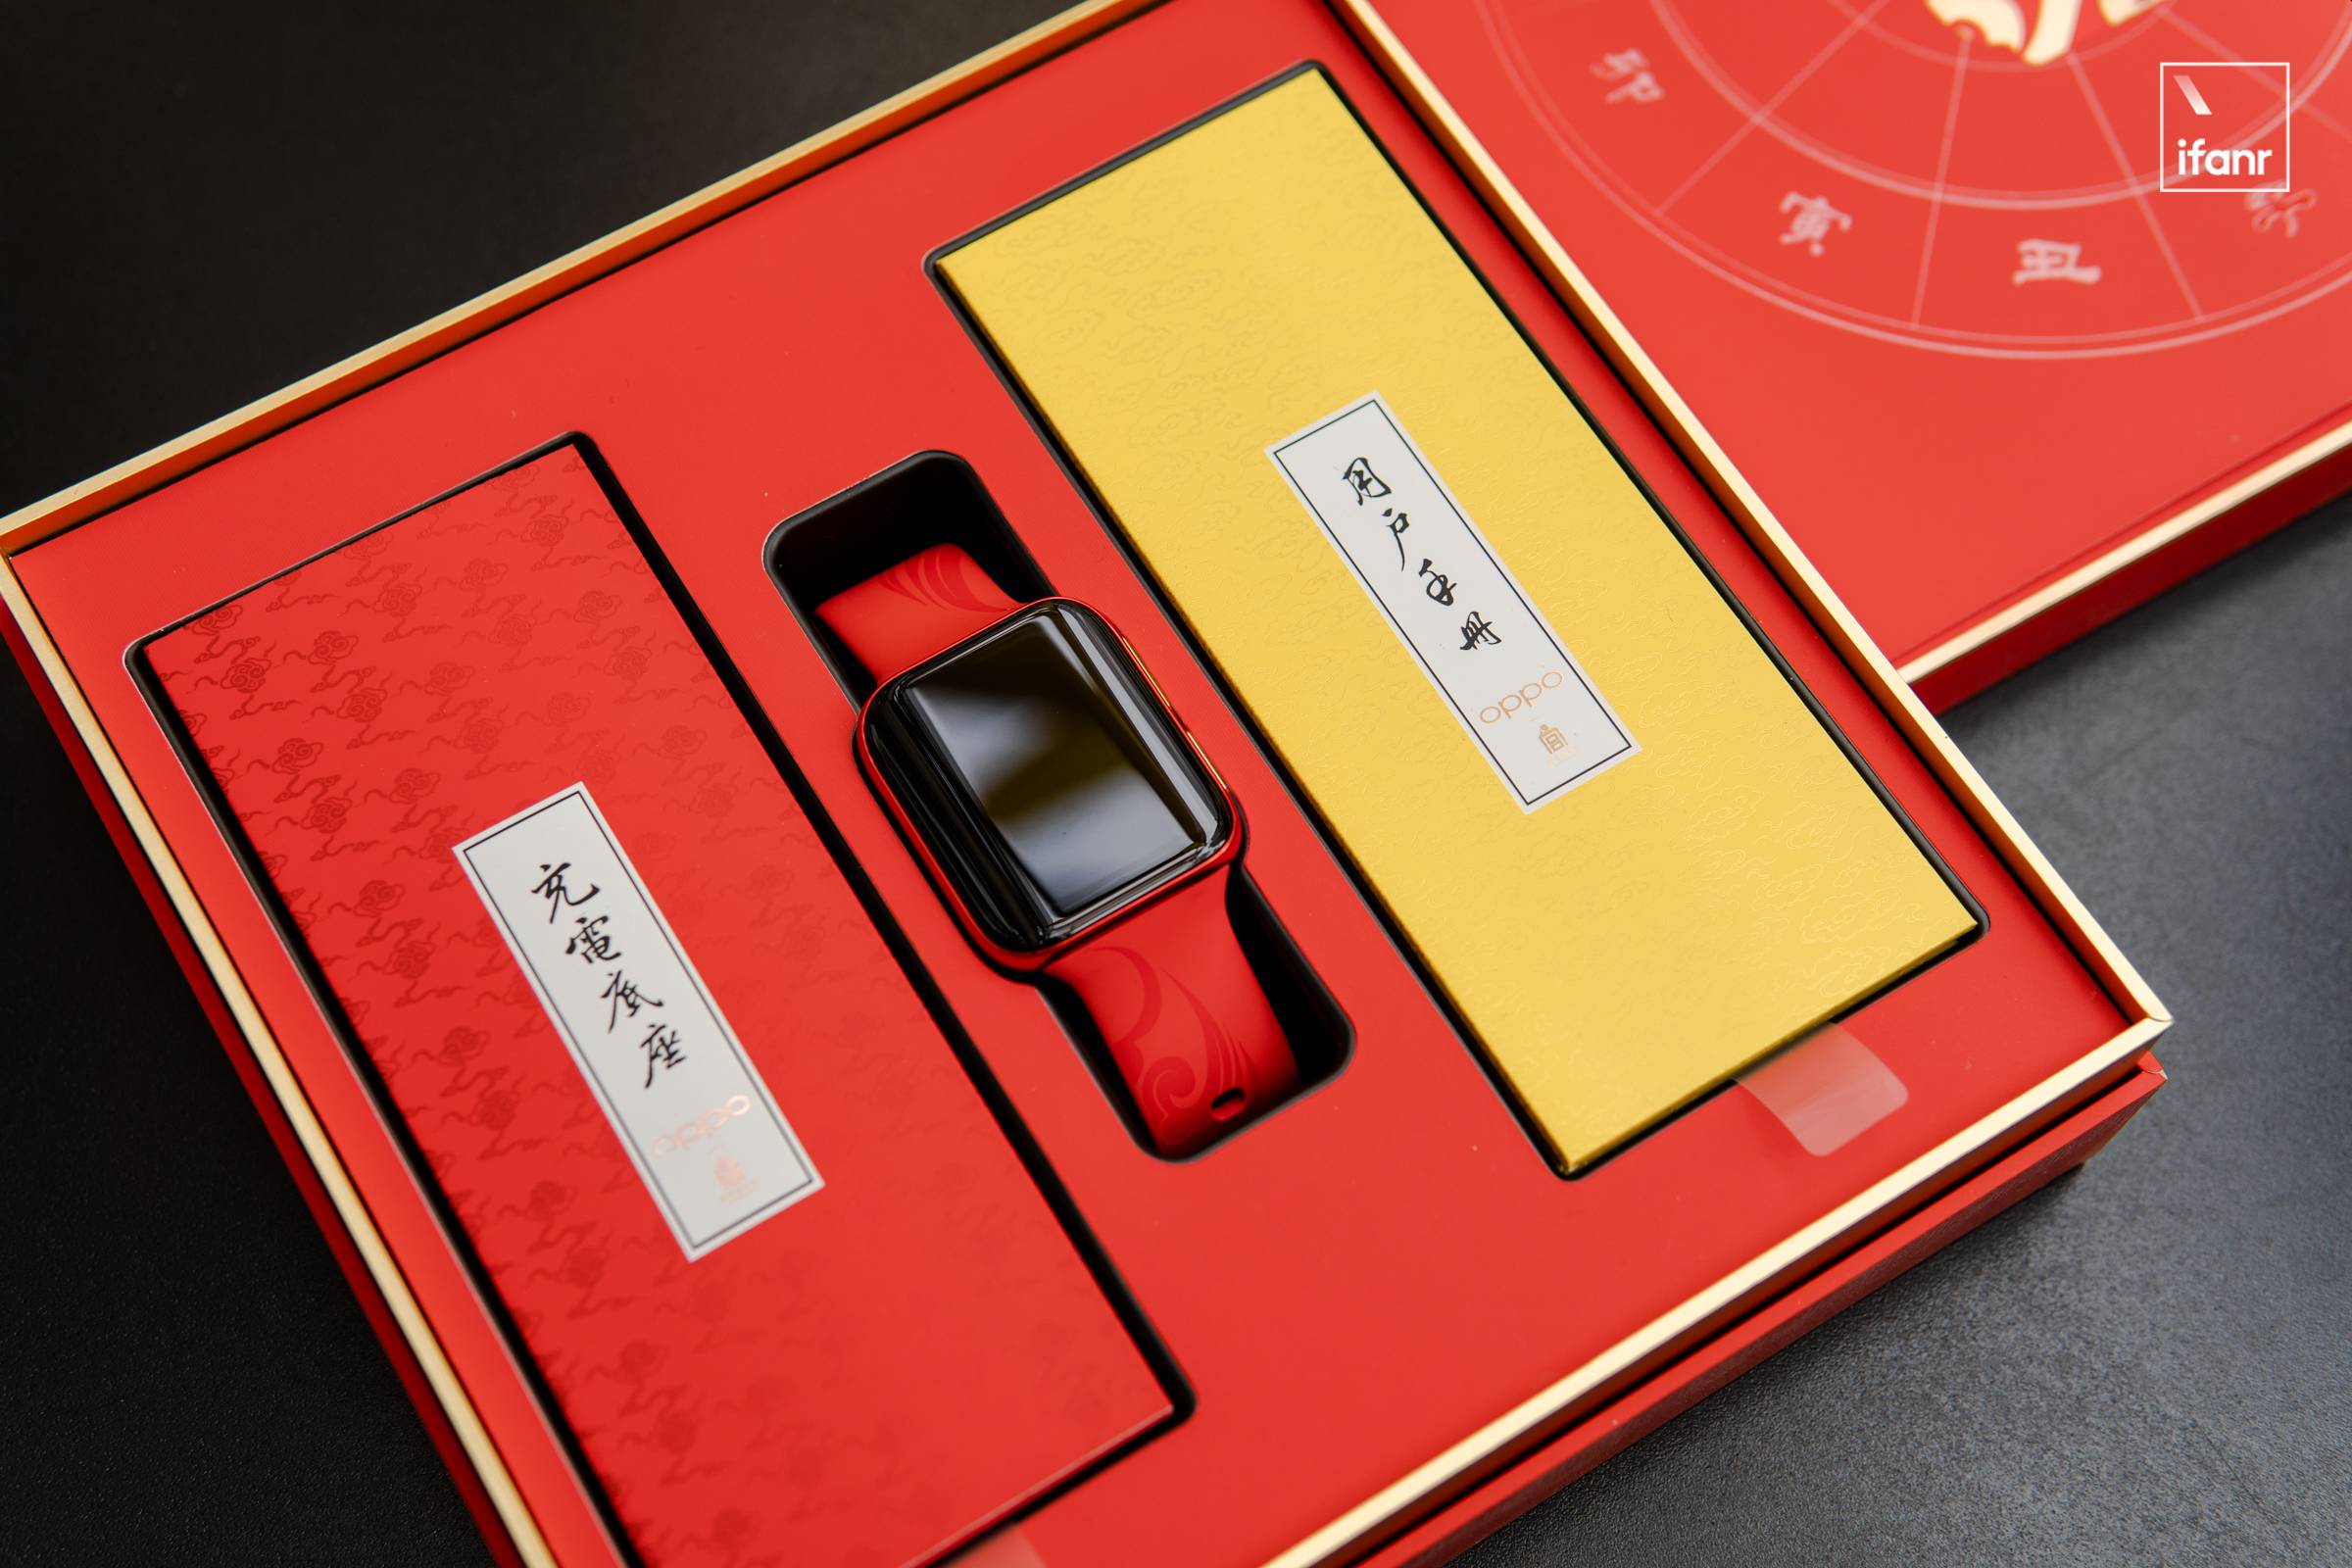 DSC04080 7 - OPPO x Forbidden City Smart Wearable Co-branded Series Picture Reward: “Red” è il leader, “Gold” è pieno di giada